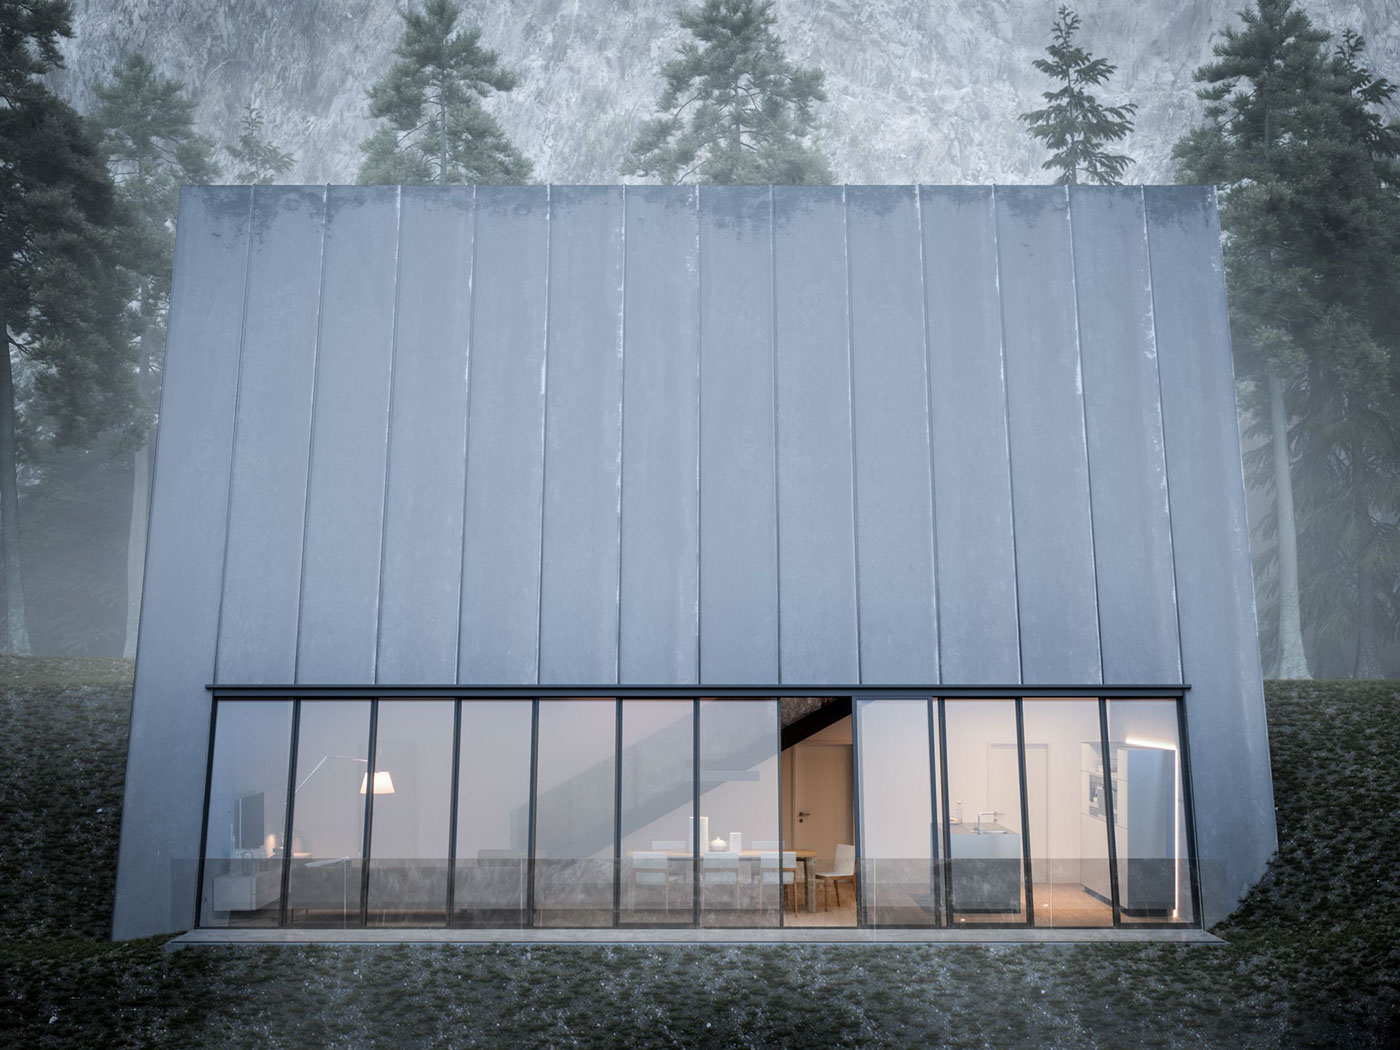 lichtecht hamburg architektur Visualisierung 3D exterior Forest Pack